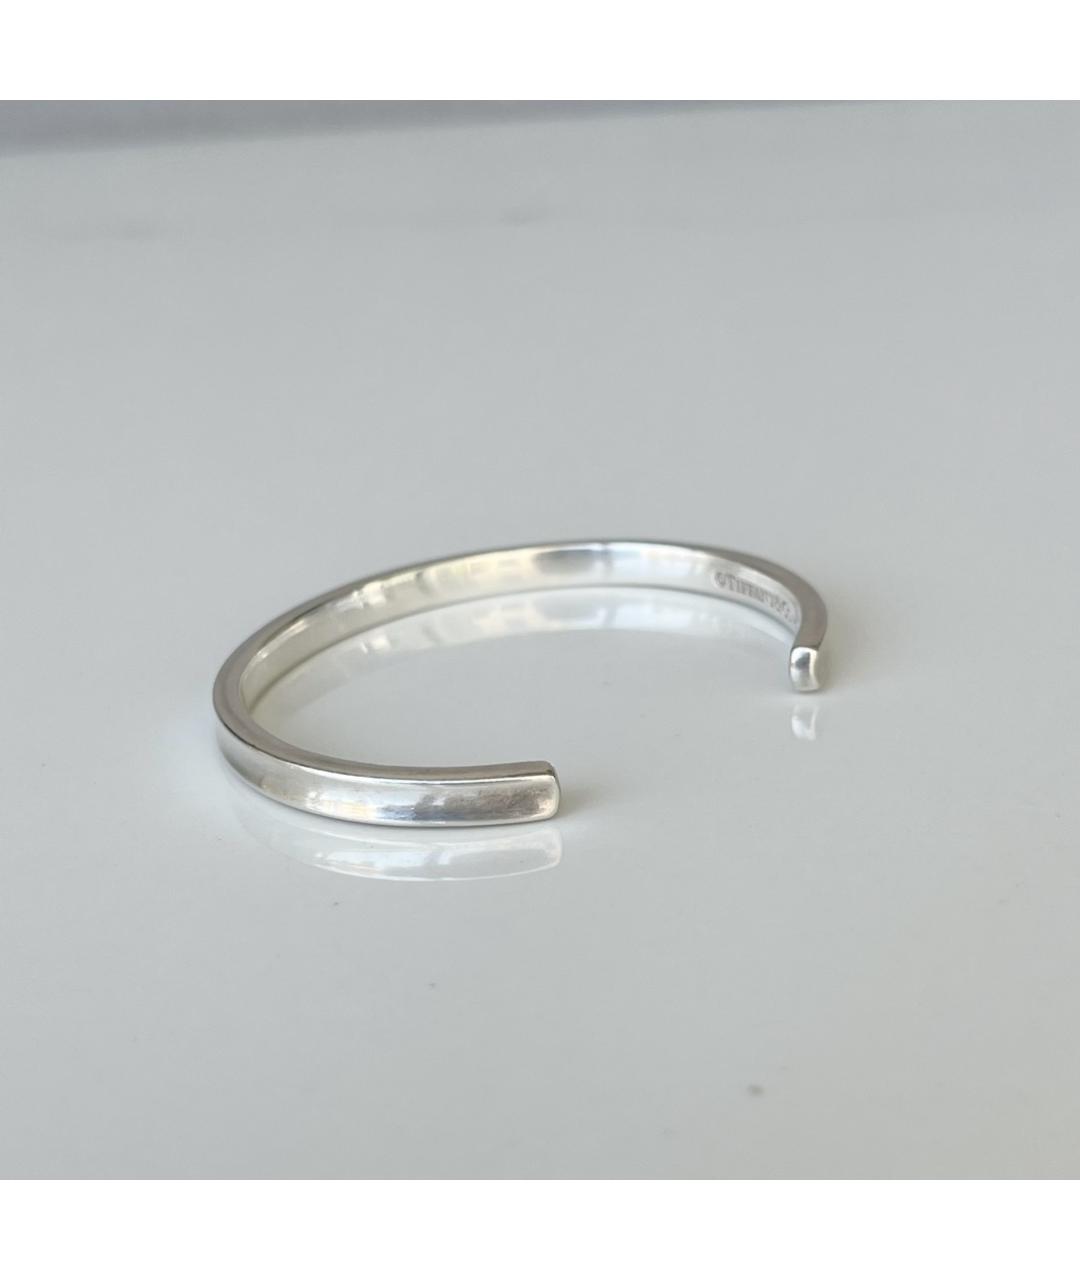 TIFFANY&CO Серебрянный серебряный браслет, фото 3